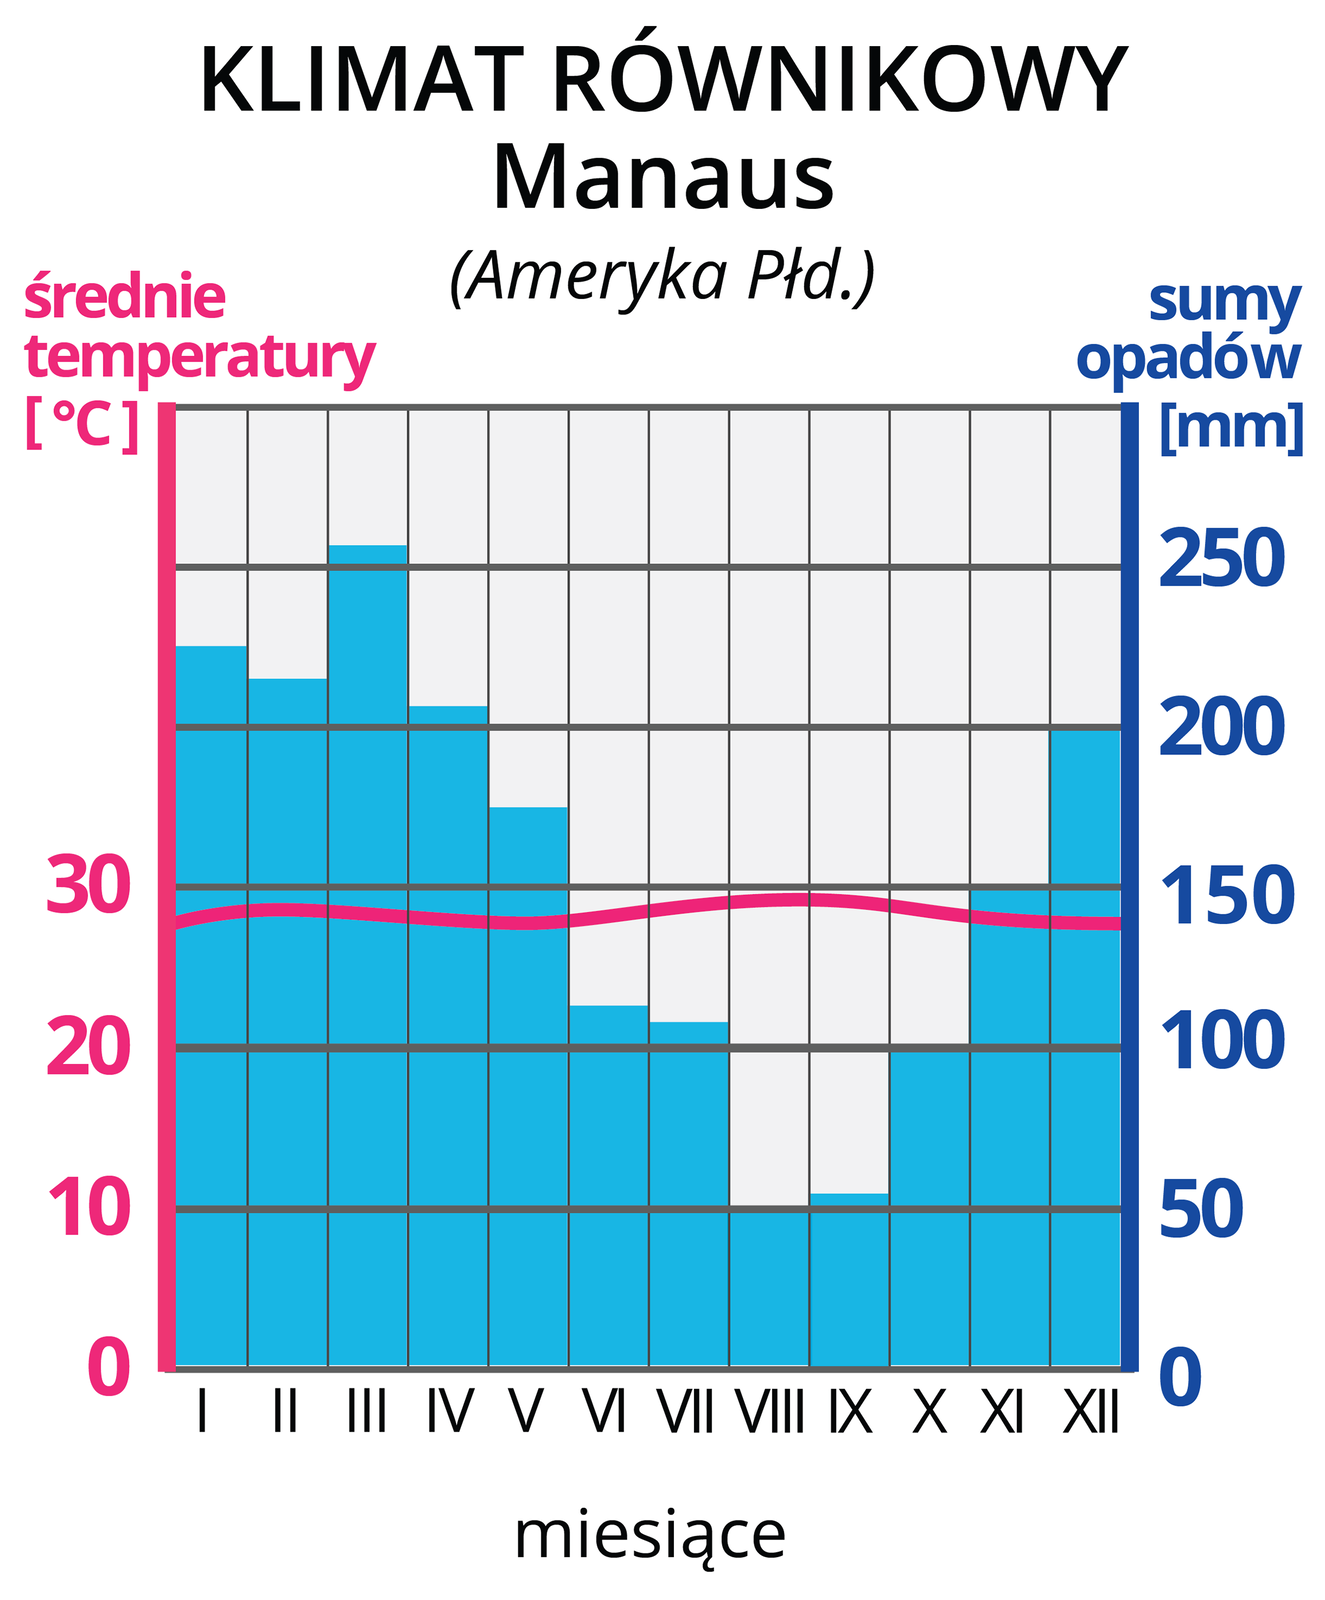 Ilustracja prezentuje wykres – klimatogram, klimatu równikowego z Manaus w Ameryce Południowej. Na lewej osi wykresu wyskalowano średnie temperatury w OC, na prawej osi wykresu wyskalowano sumy opadów w mm. Na osi poziomej zaznaczono cyframi rzymskimi kolejne miesiące. Czerwona pozioma linia na wykresie, to średnie temperatury w poszczególnych miesiącach. Tutaj na wysokości około 29 OC. Niebieskie słupki, to wysokości sum opadów w poszczególnych miesiącach. Najwyższe , powyżej 200 mm, w miesiącach grudzień-maj. Najniższe opady, poniżej 100 mm, czerwiec-październik.